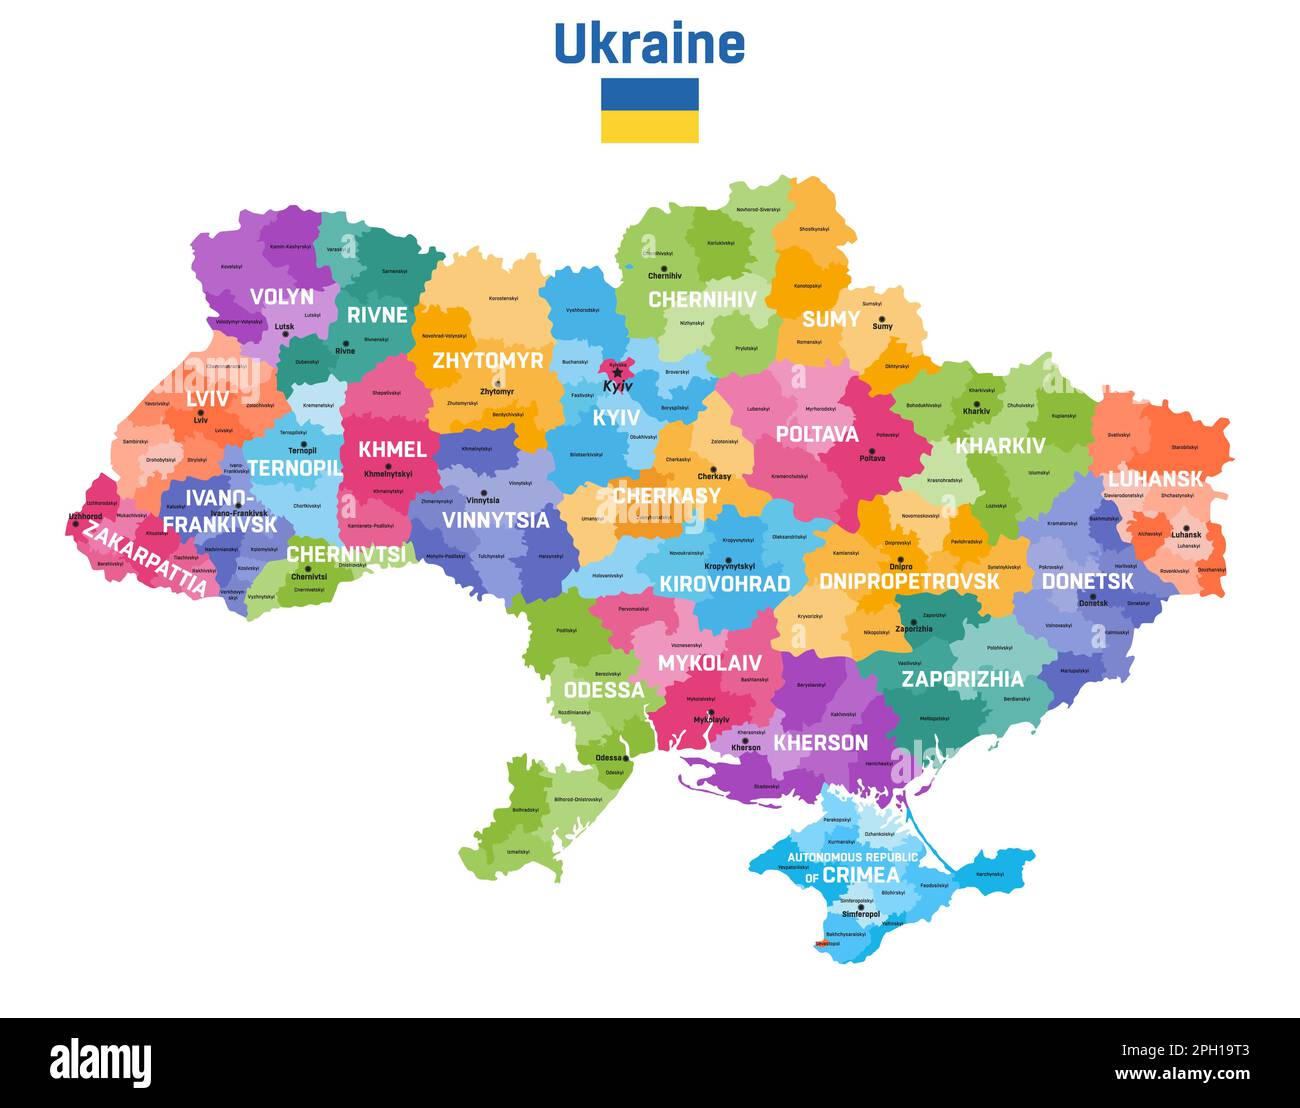 Carte de l'Ukraine colorée par divisions administratives (oblasts et raions) avec inscriptions et capitales. Drapeau de l'Ukraine Illustration de Vecteur